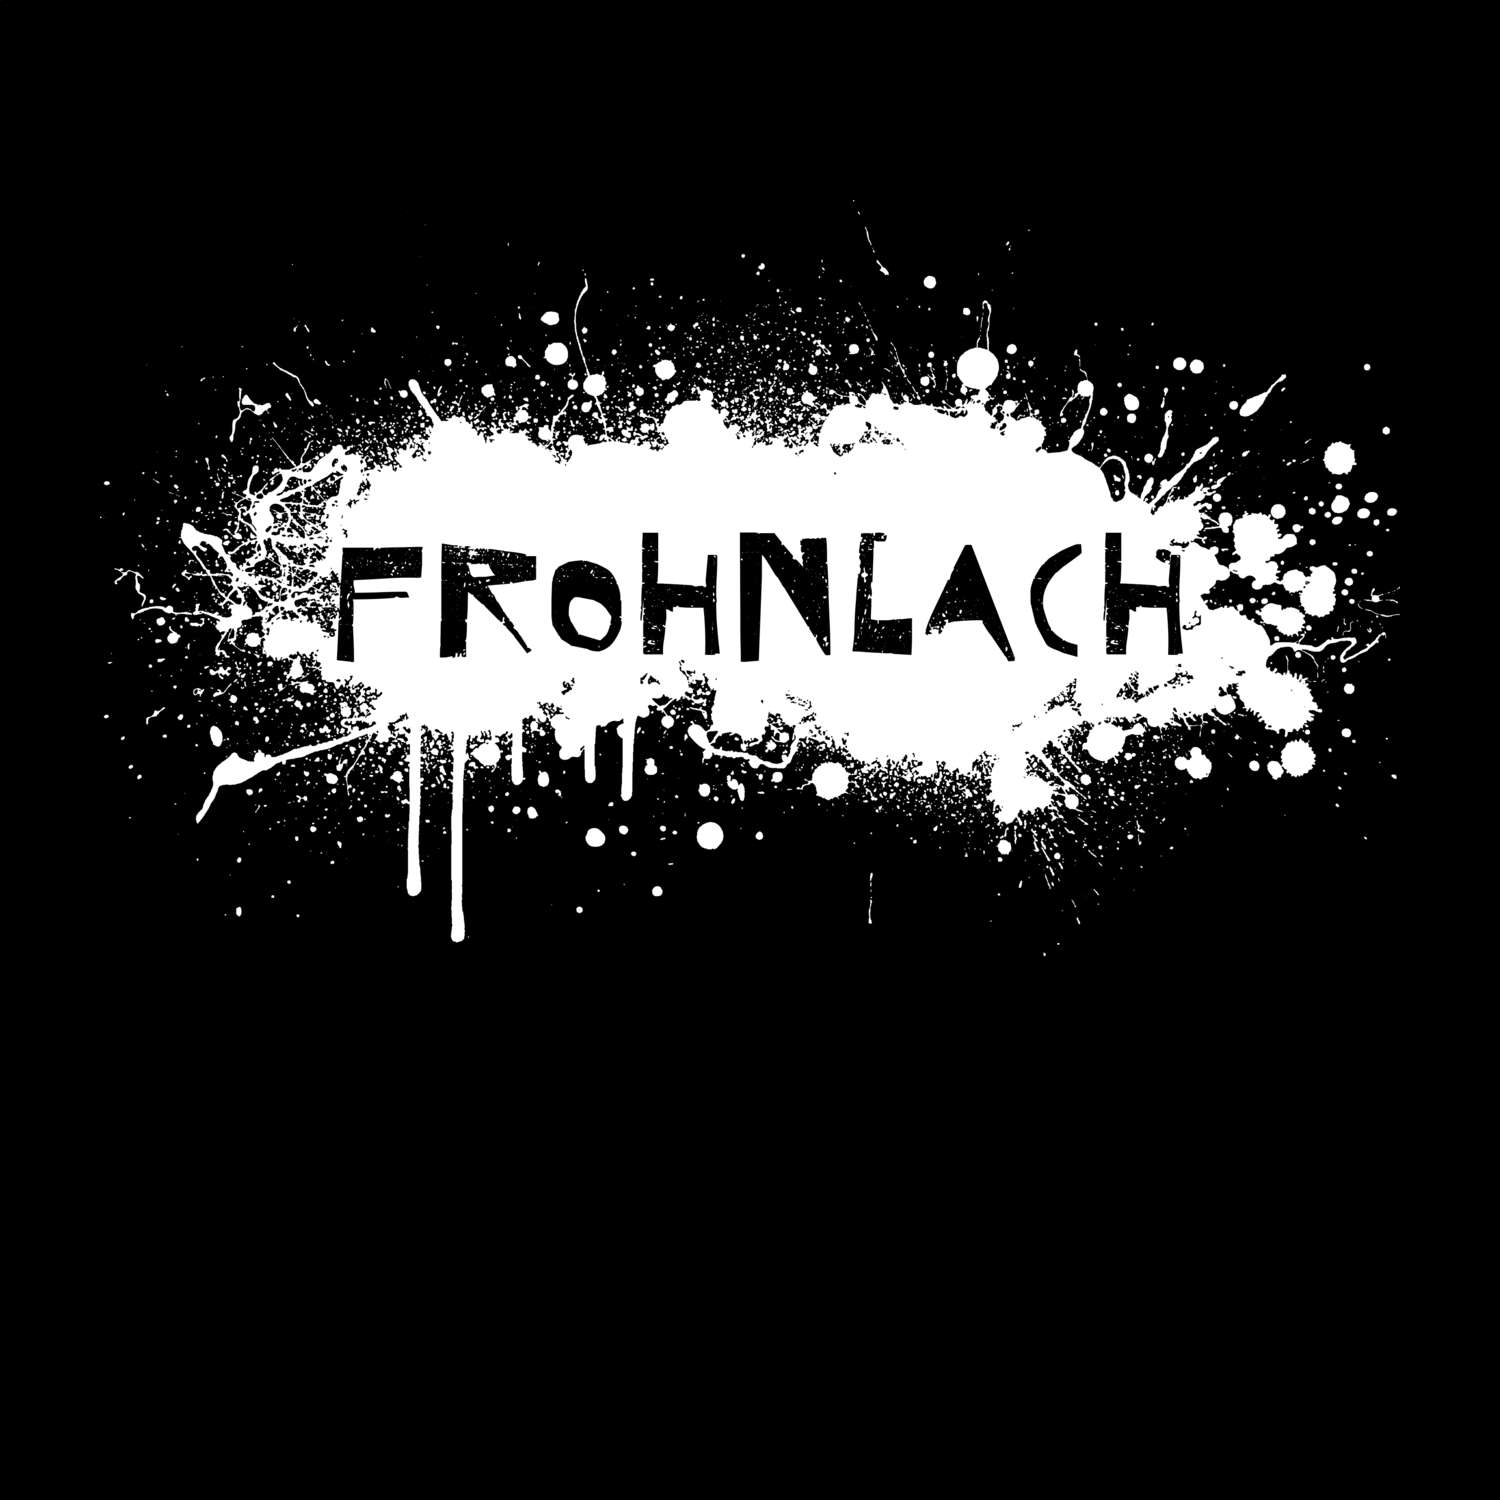 Frohnlach T-Shirt »Paint Splash Punk«